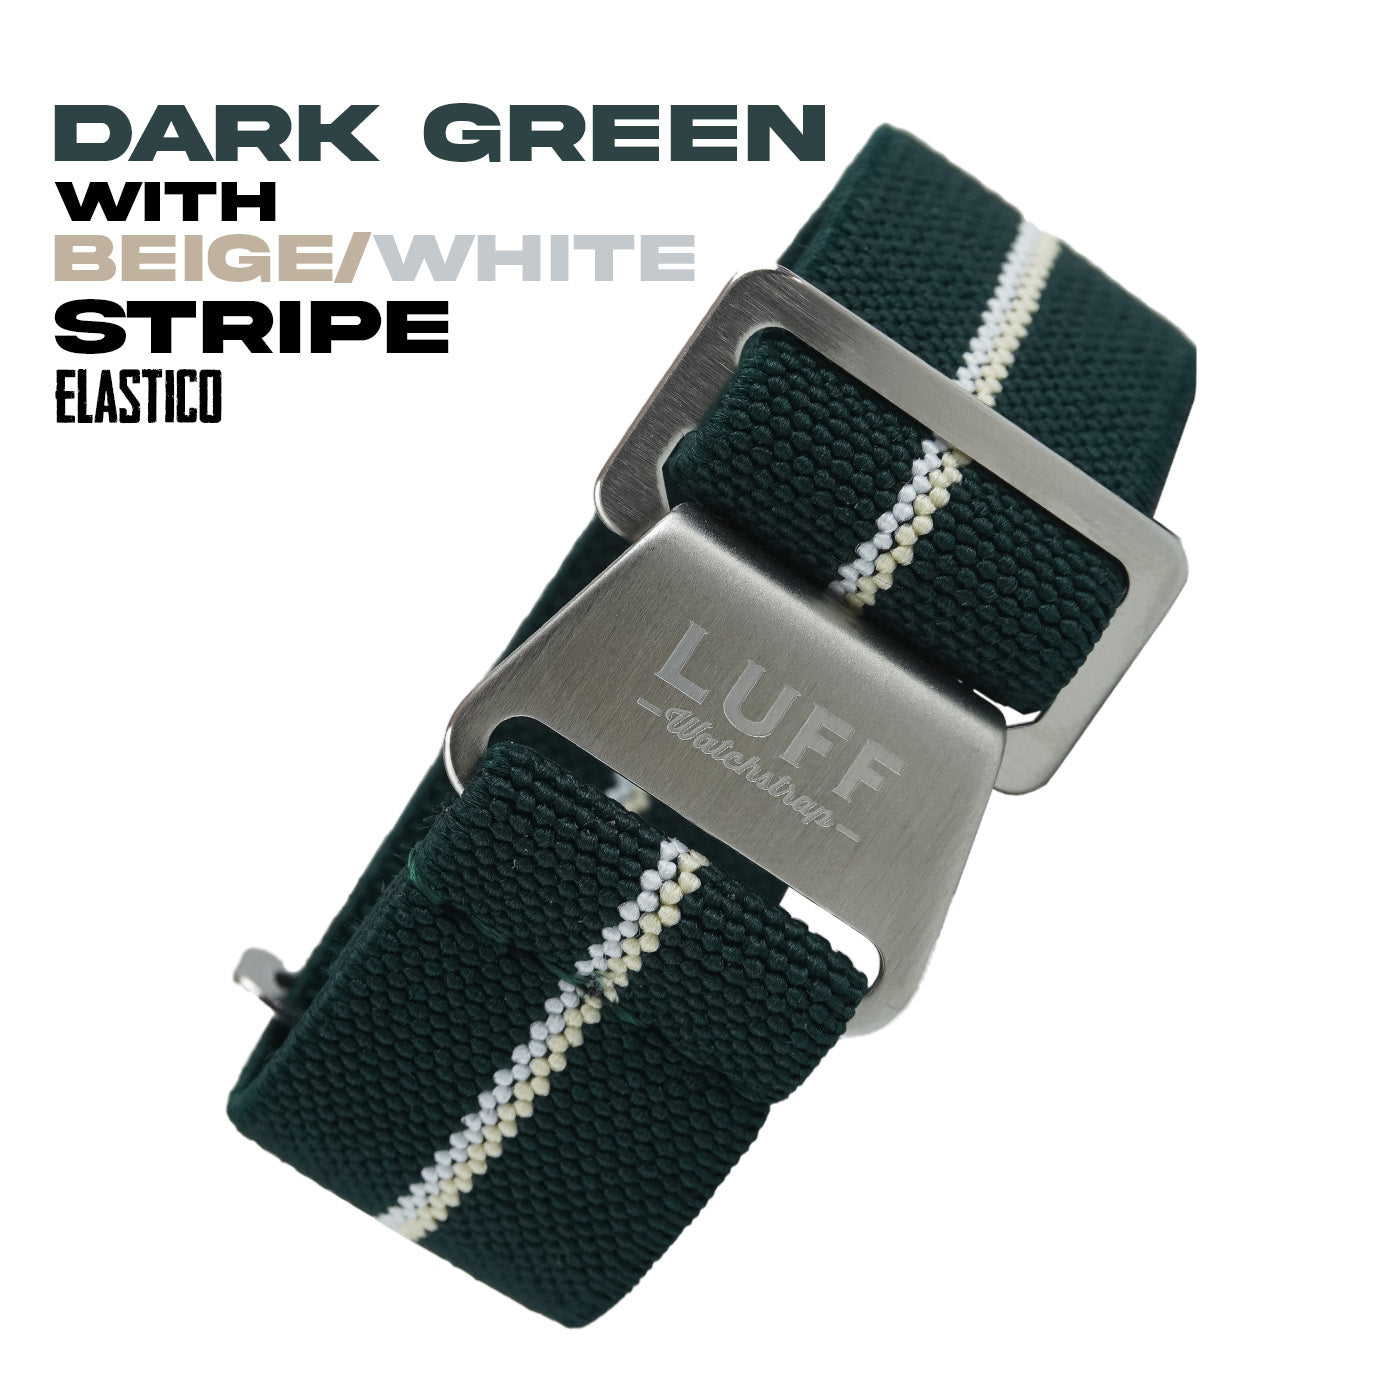 Dark Green with Beige/White Stripe (6904191844439)